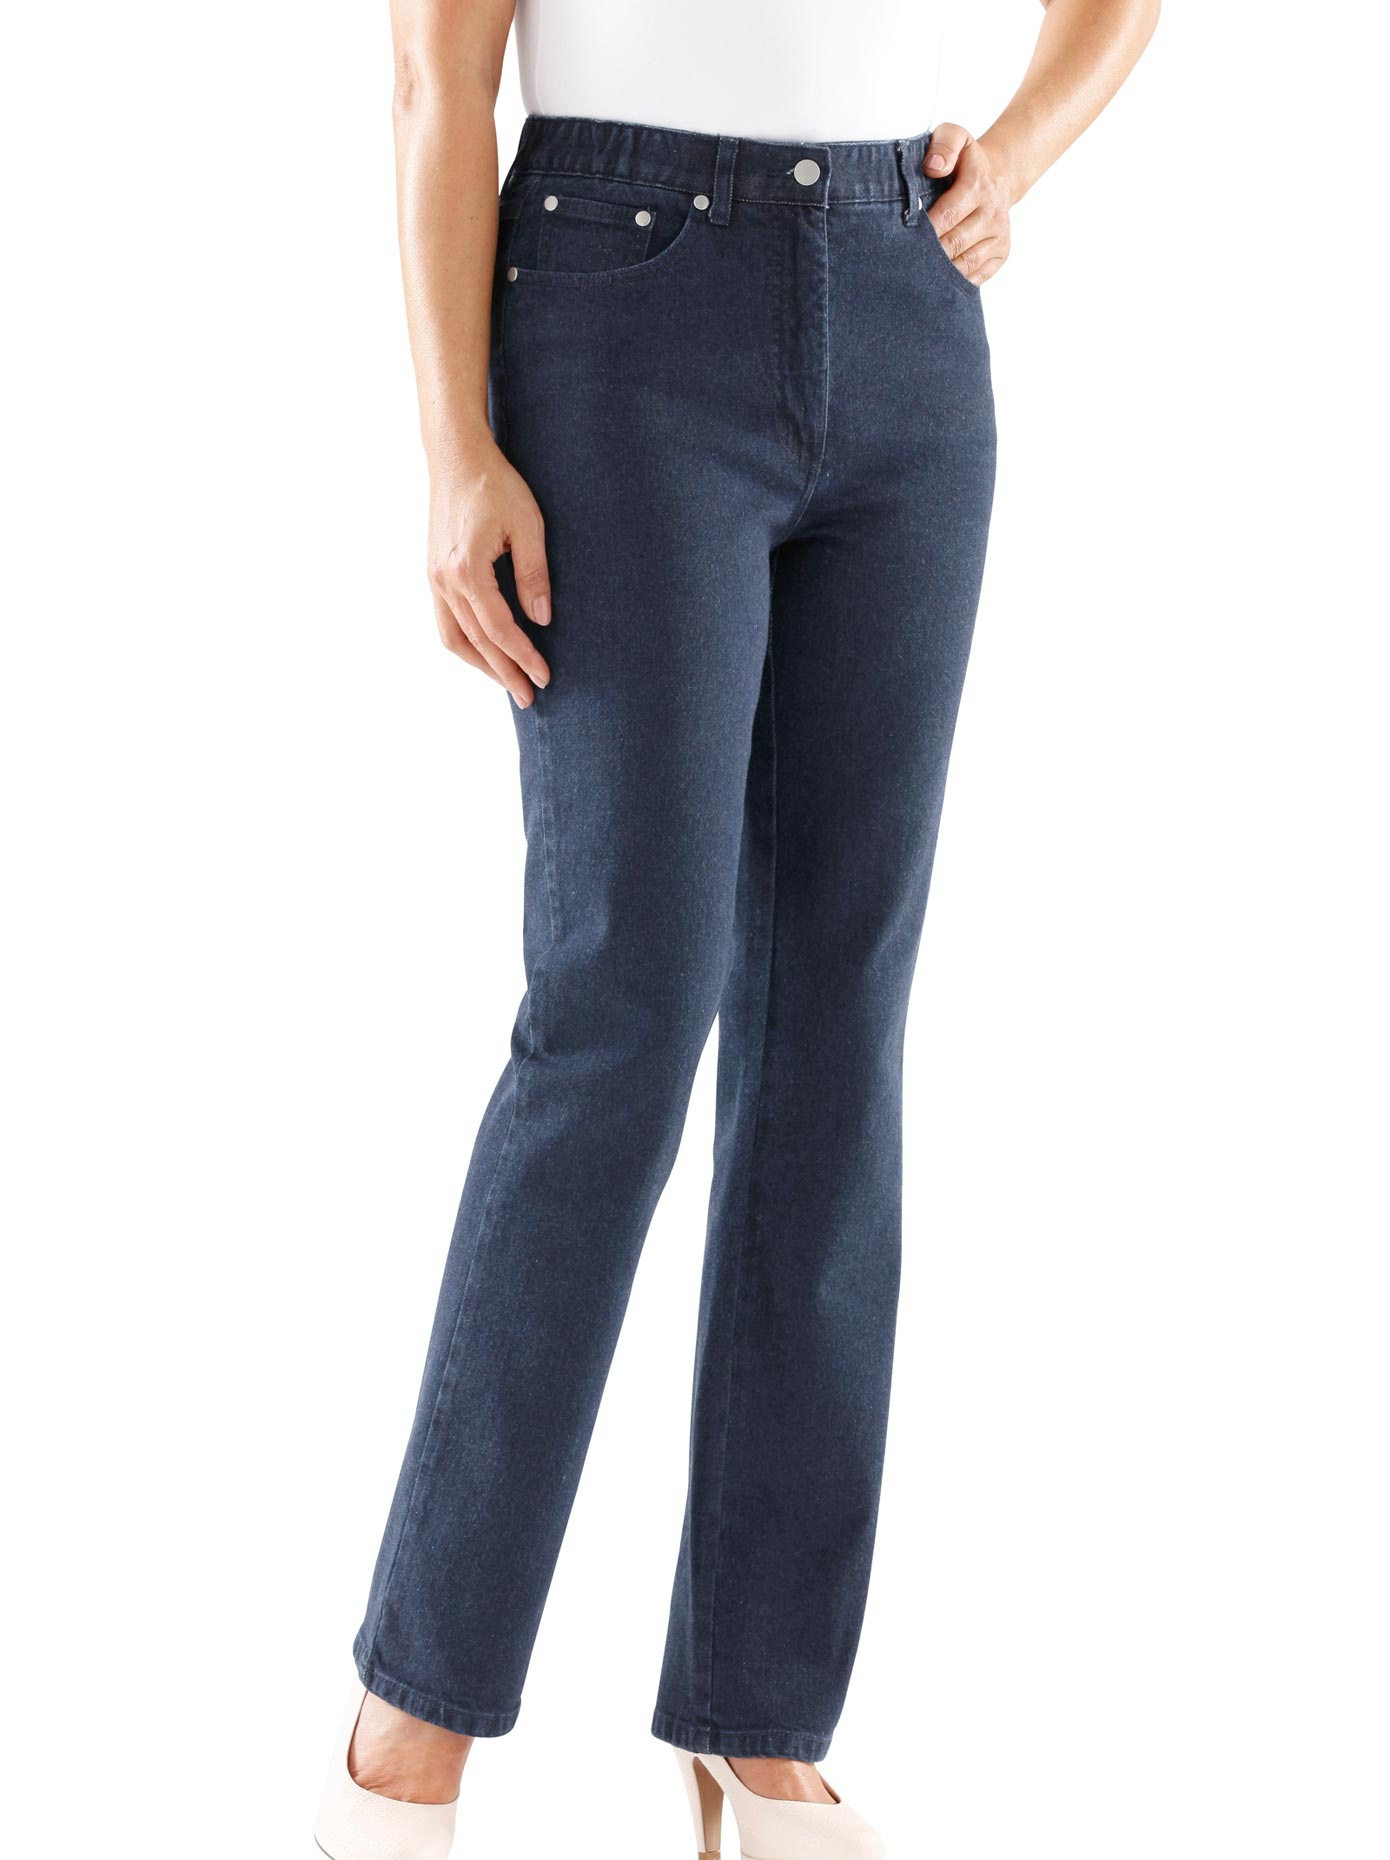 Stretch & 5-Pocket Jeans für Damen - gleich ordern!